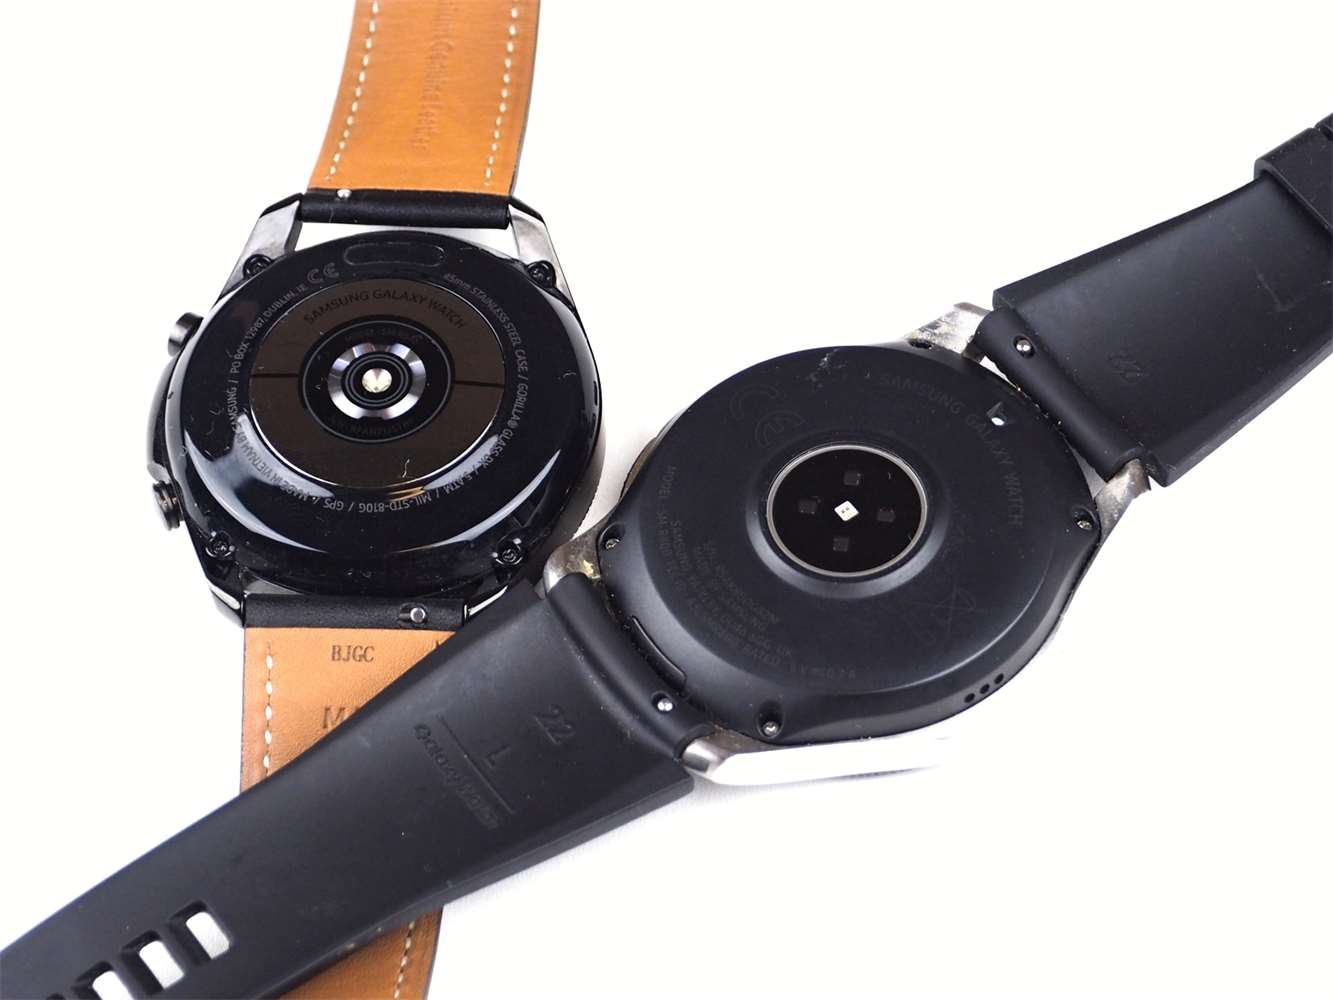 Galerie - VYZKOUŠENO: Samsung Galaxy Watch3 jsou skvělé hodinky. Změn je ale pramálo – SamsungMania.cz